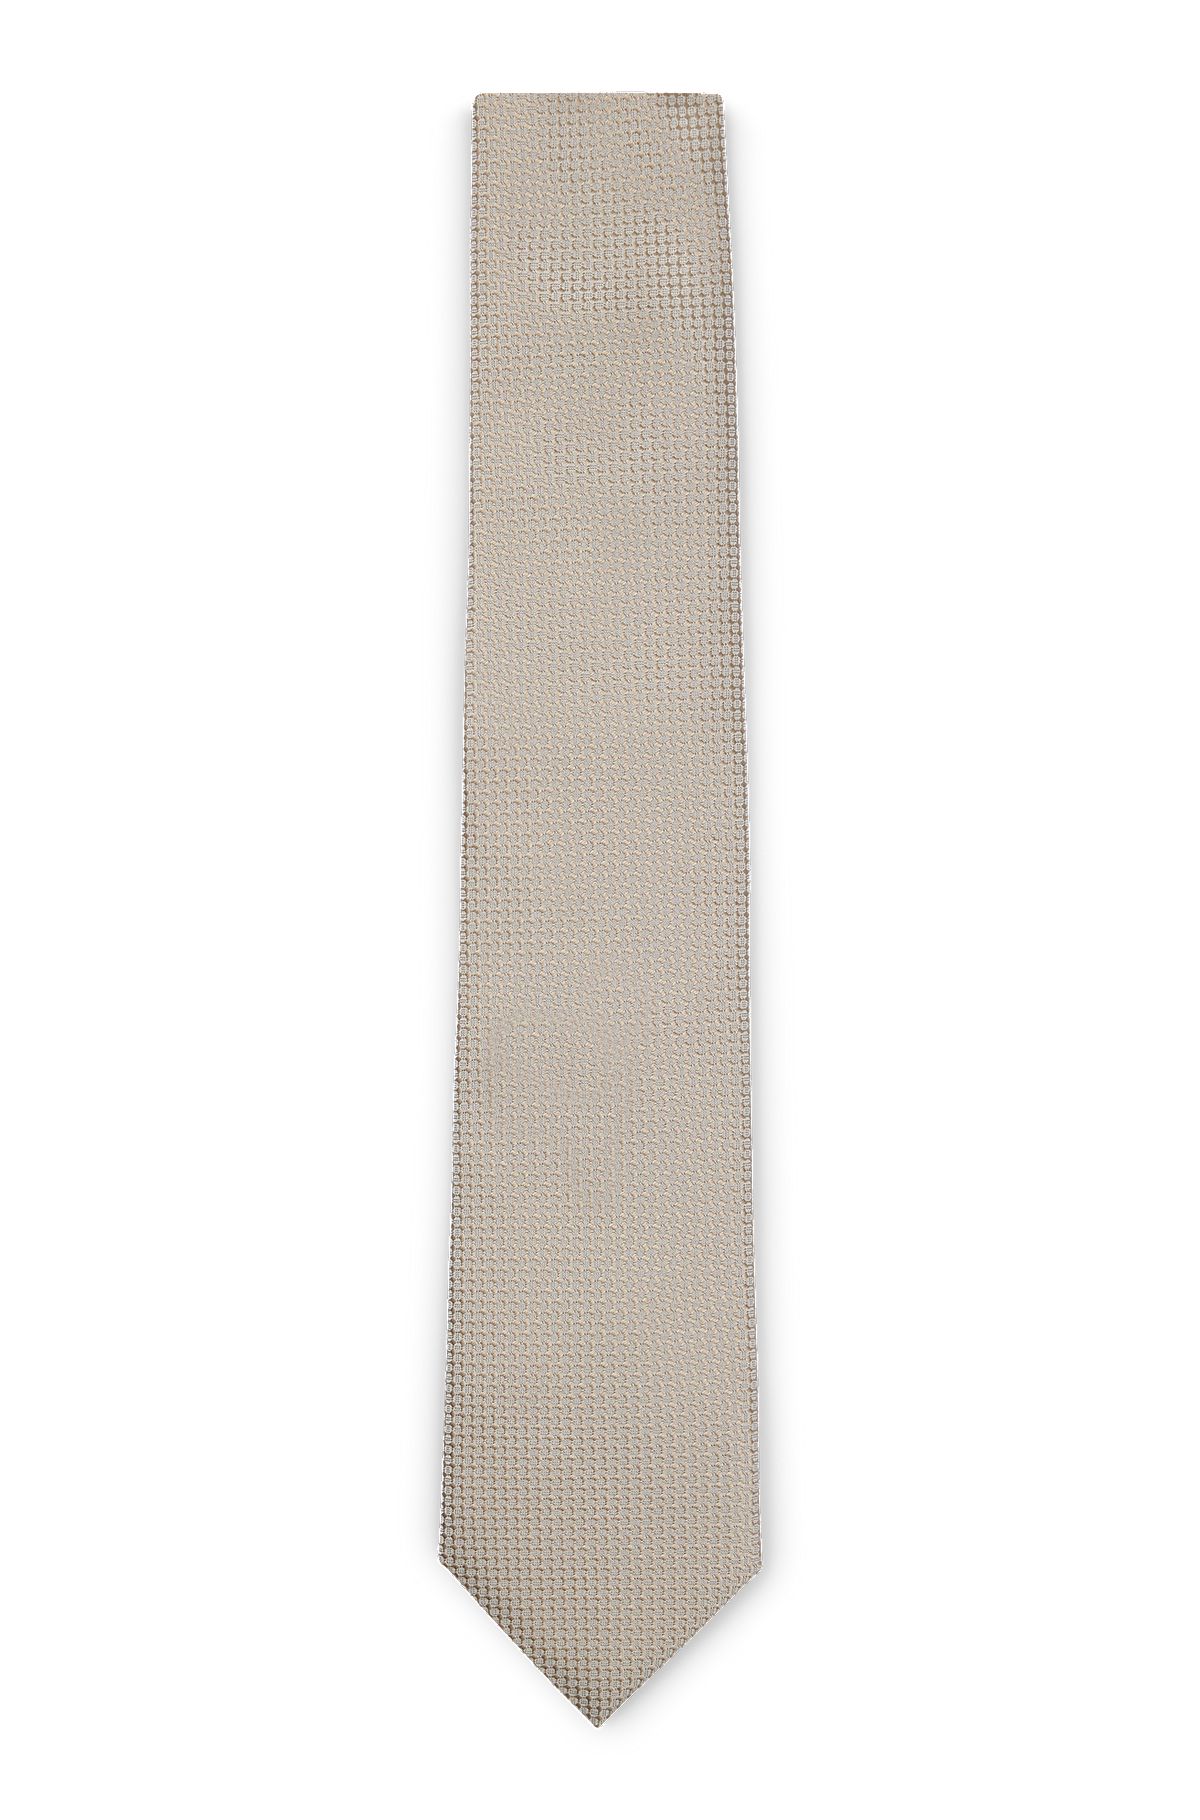 Silk-blend tie and pocket square set, Light Beige